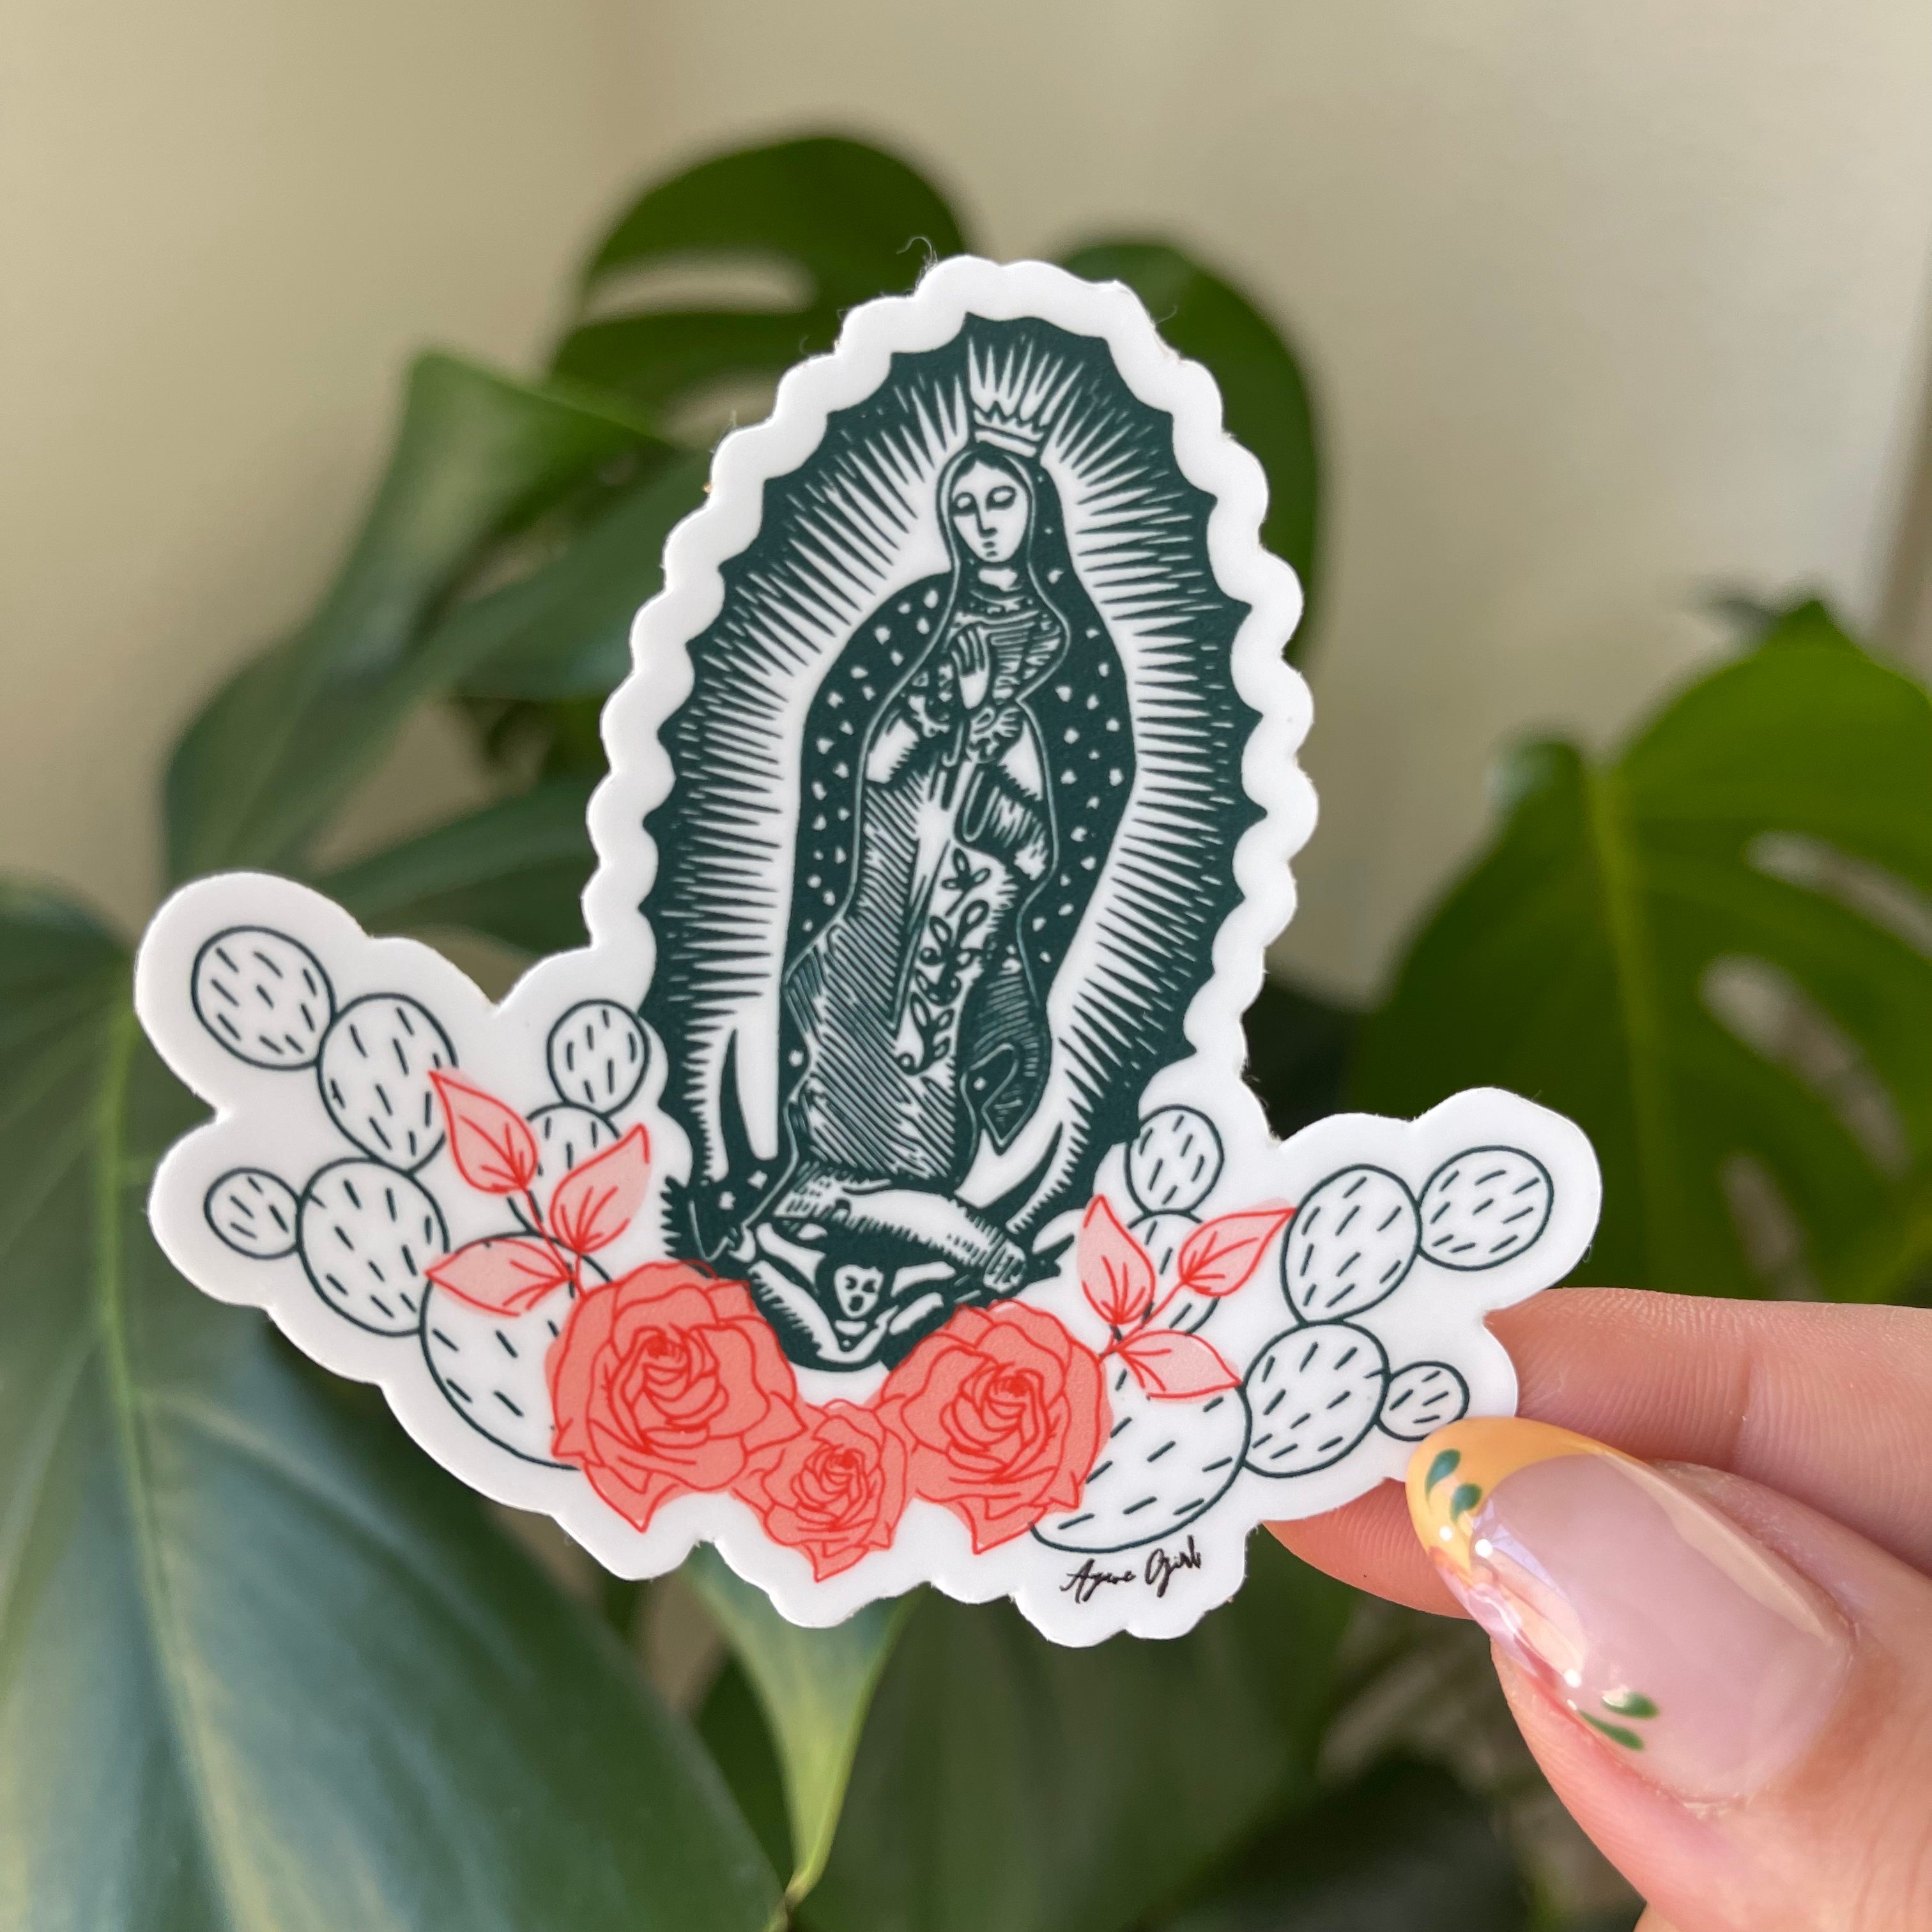 Virgencita Sticker